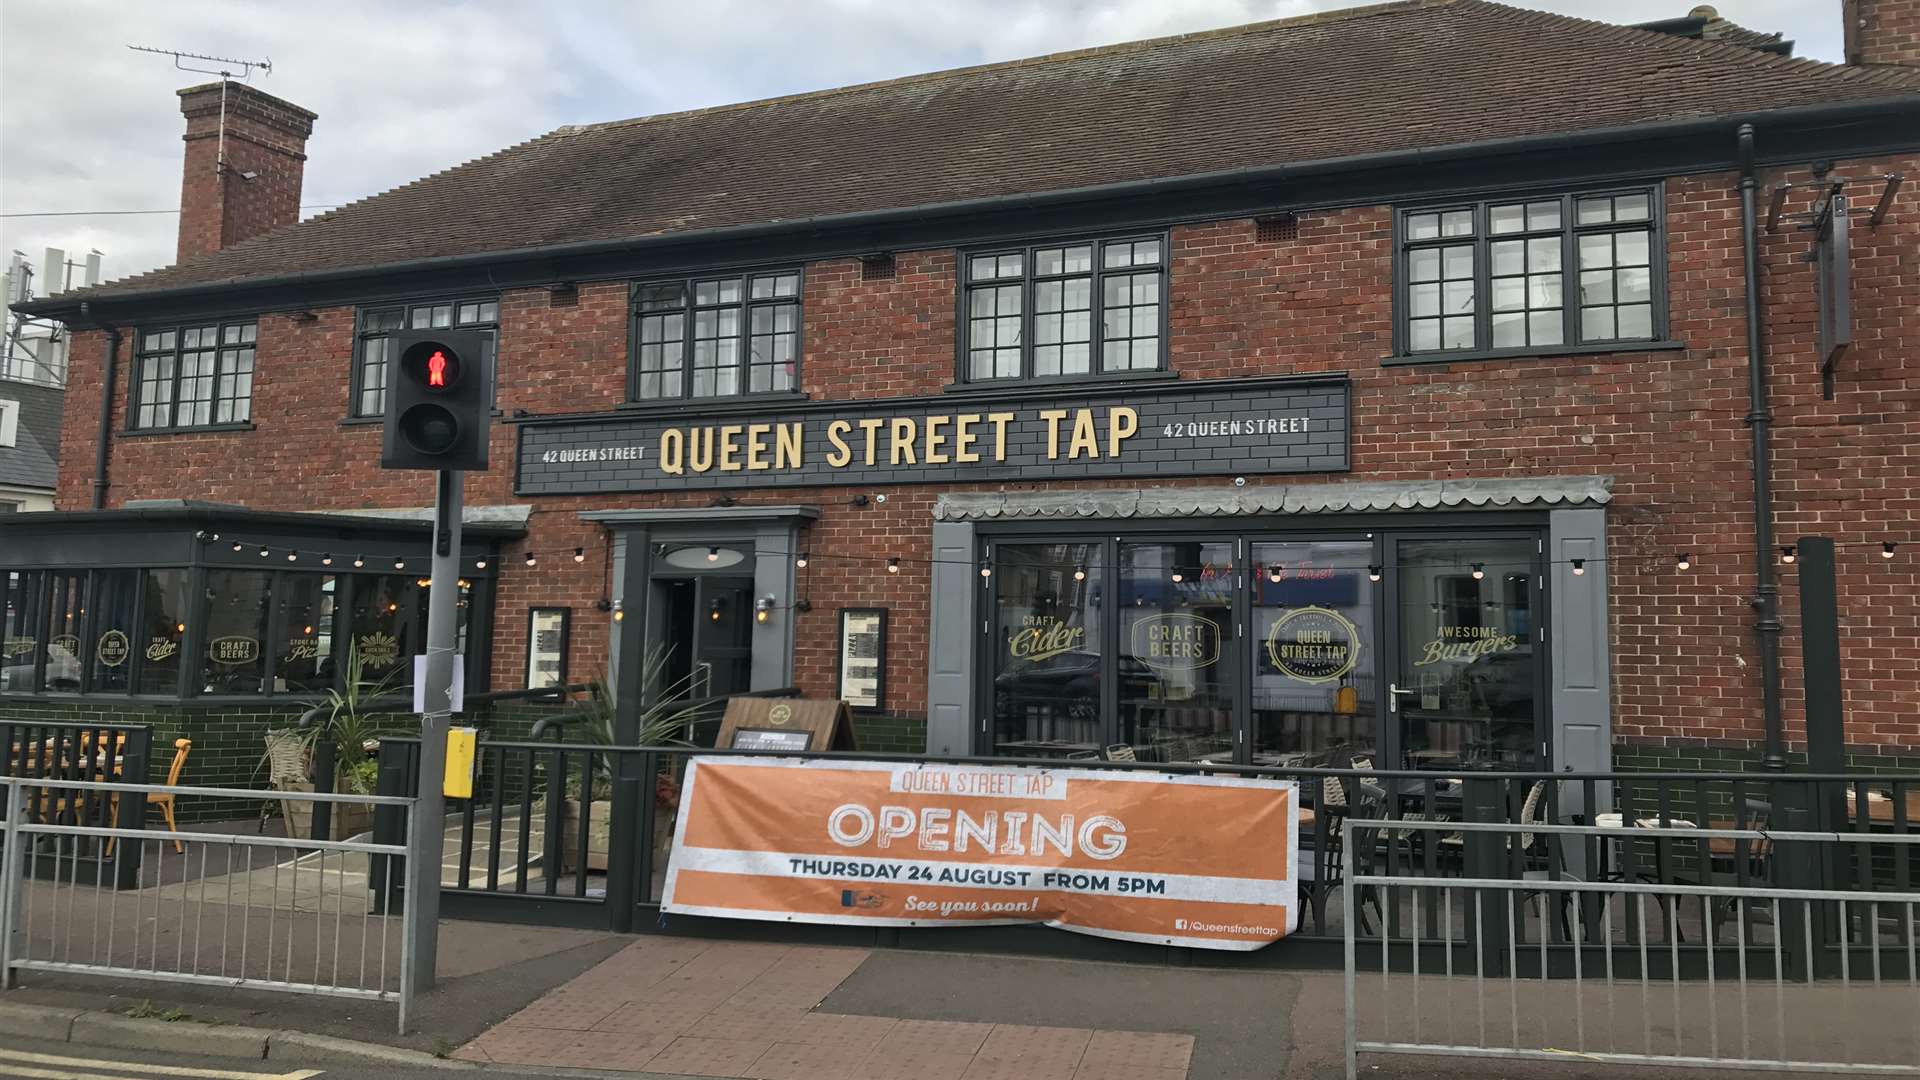 Queen Street Tap in Deal opens tonight